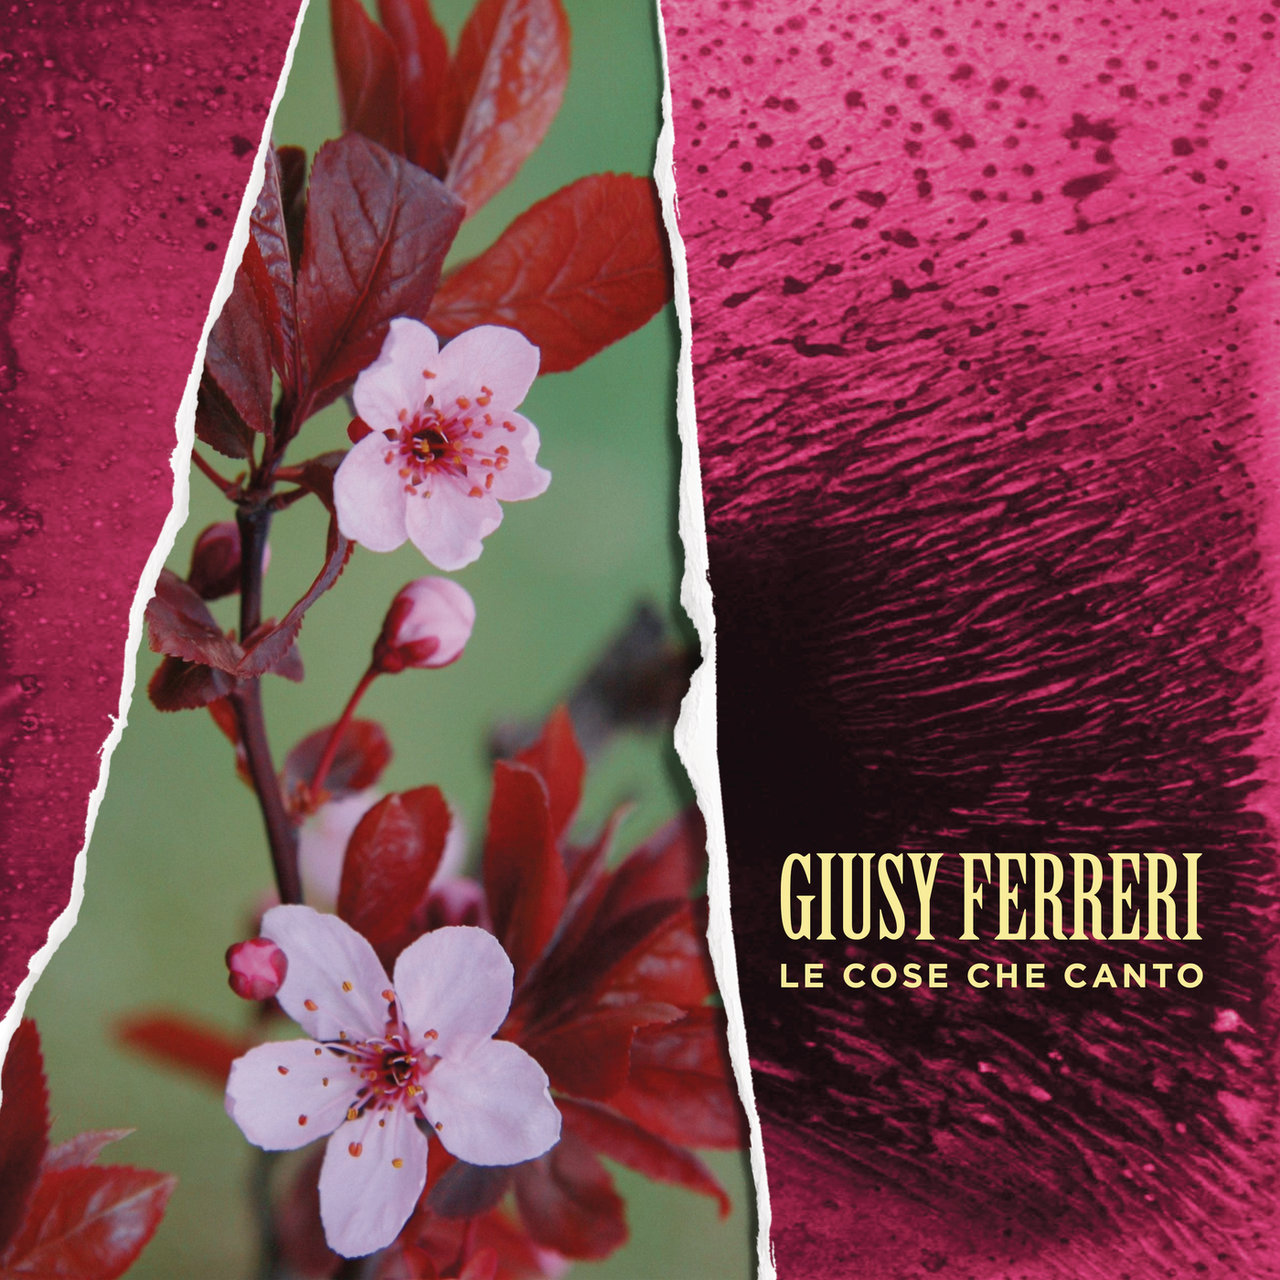 Giusy Ferreri — Le cose che canto cover artwork